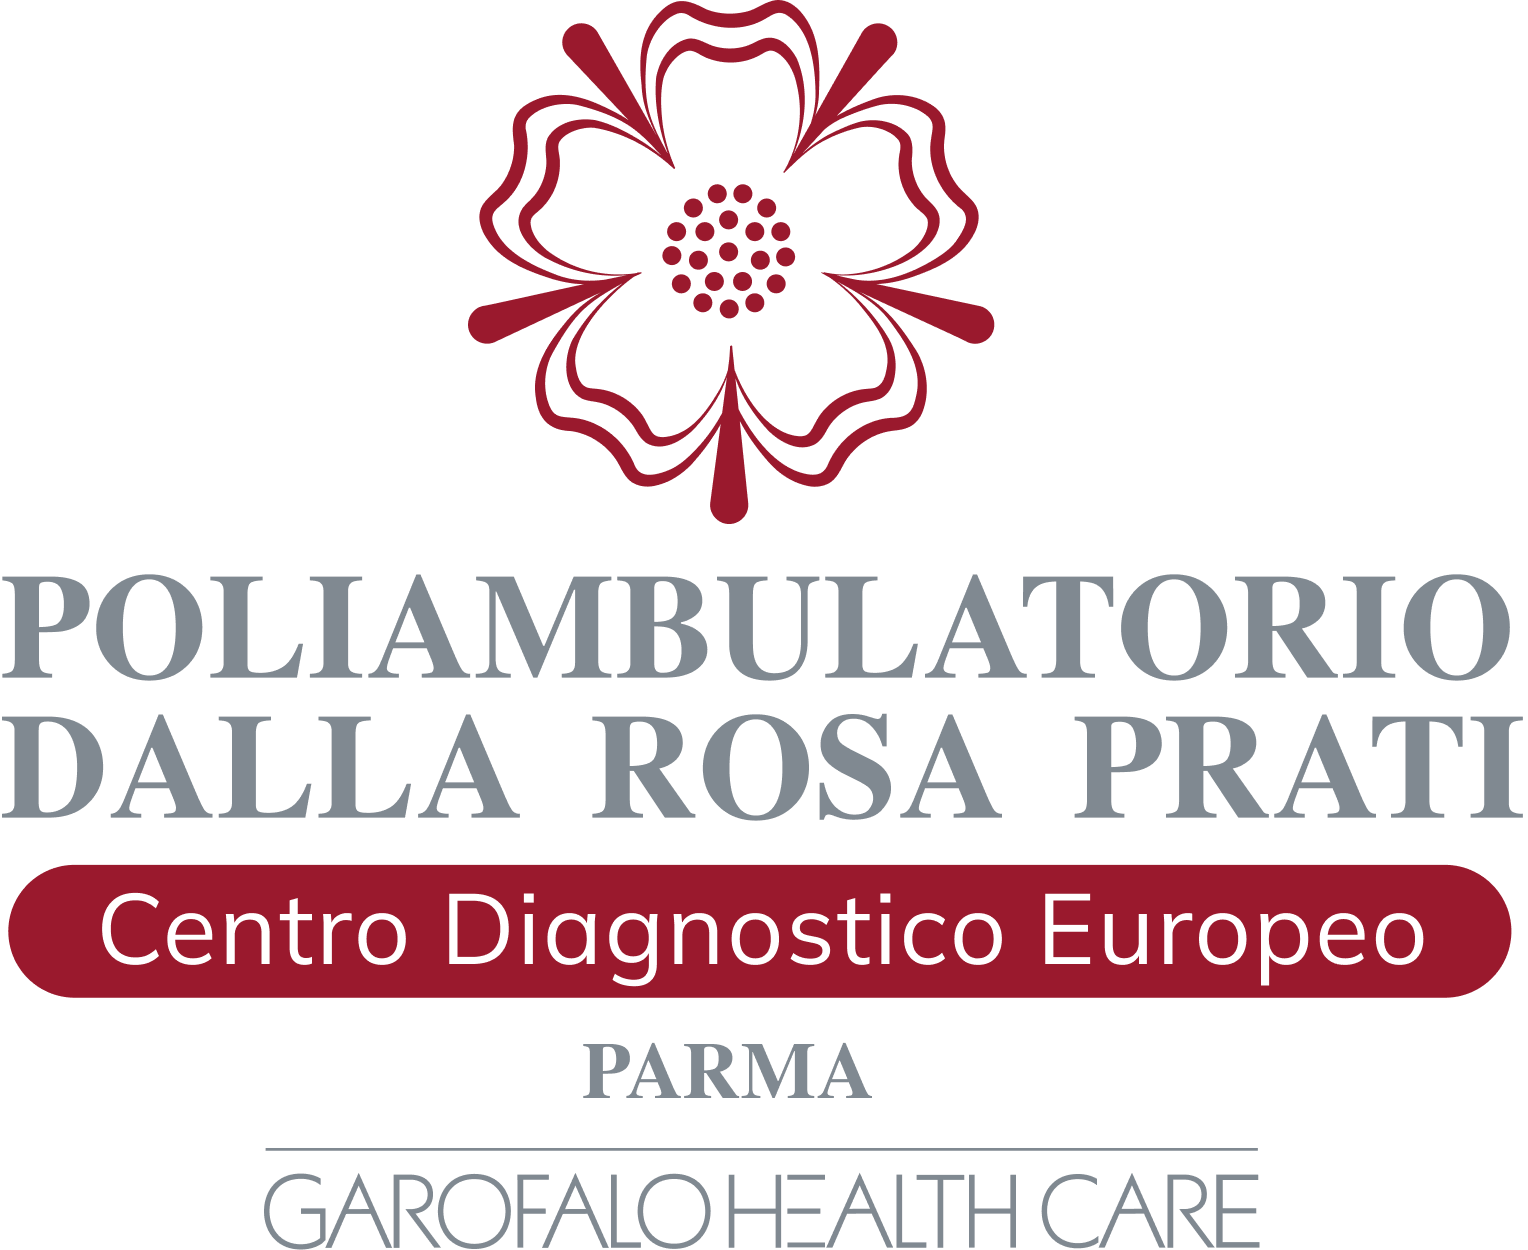 Poliambulatorio Dalla Rosa Prati - Parma